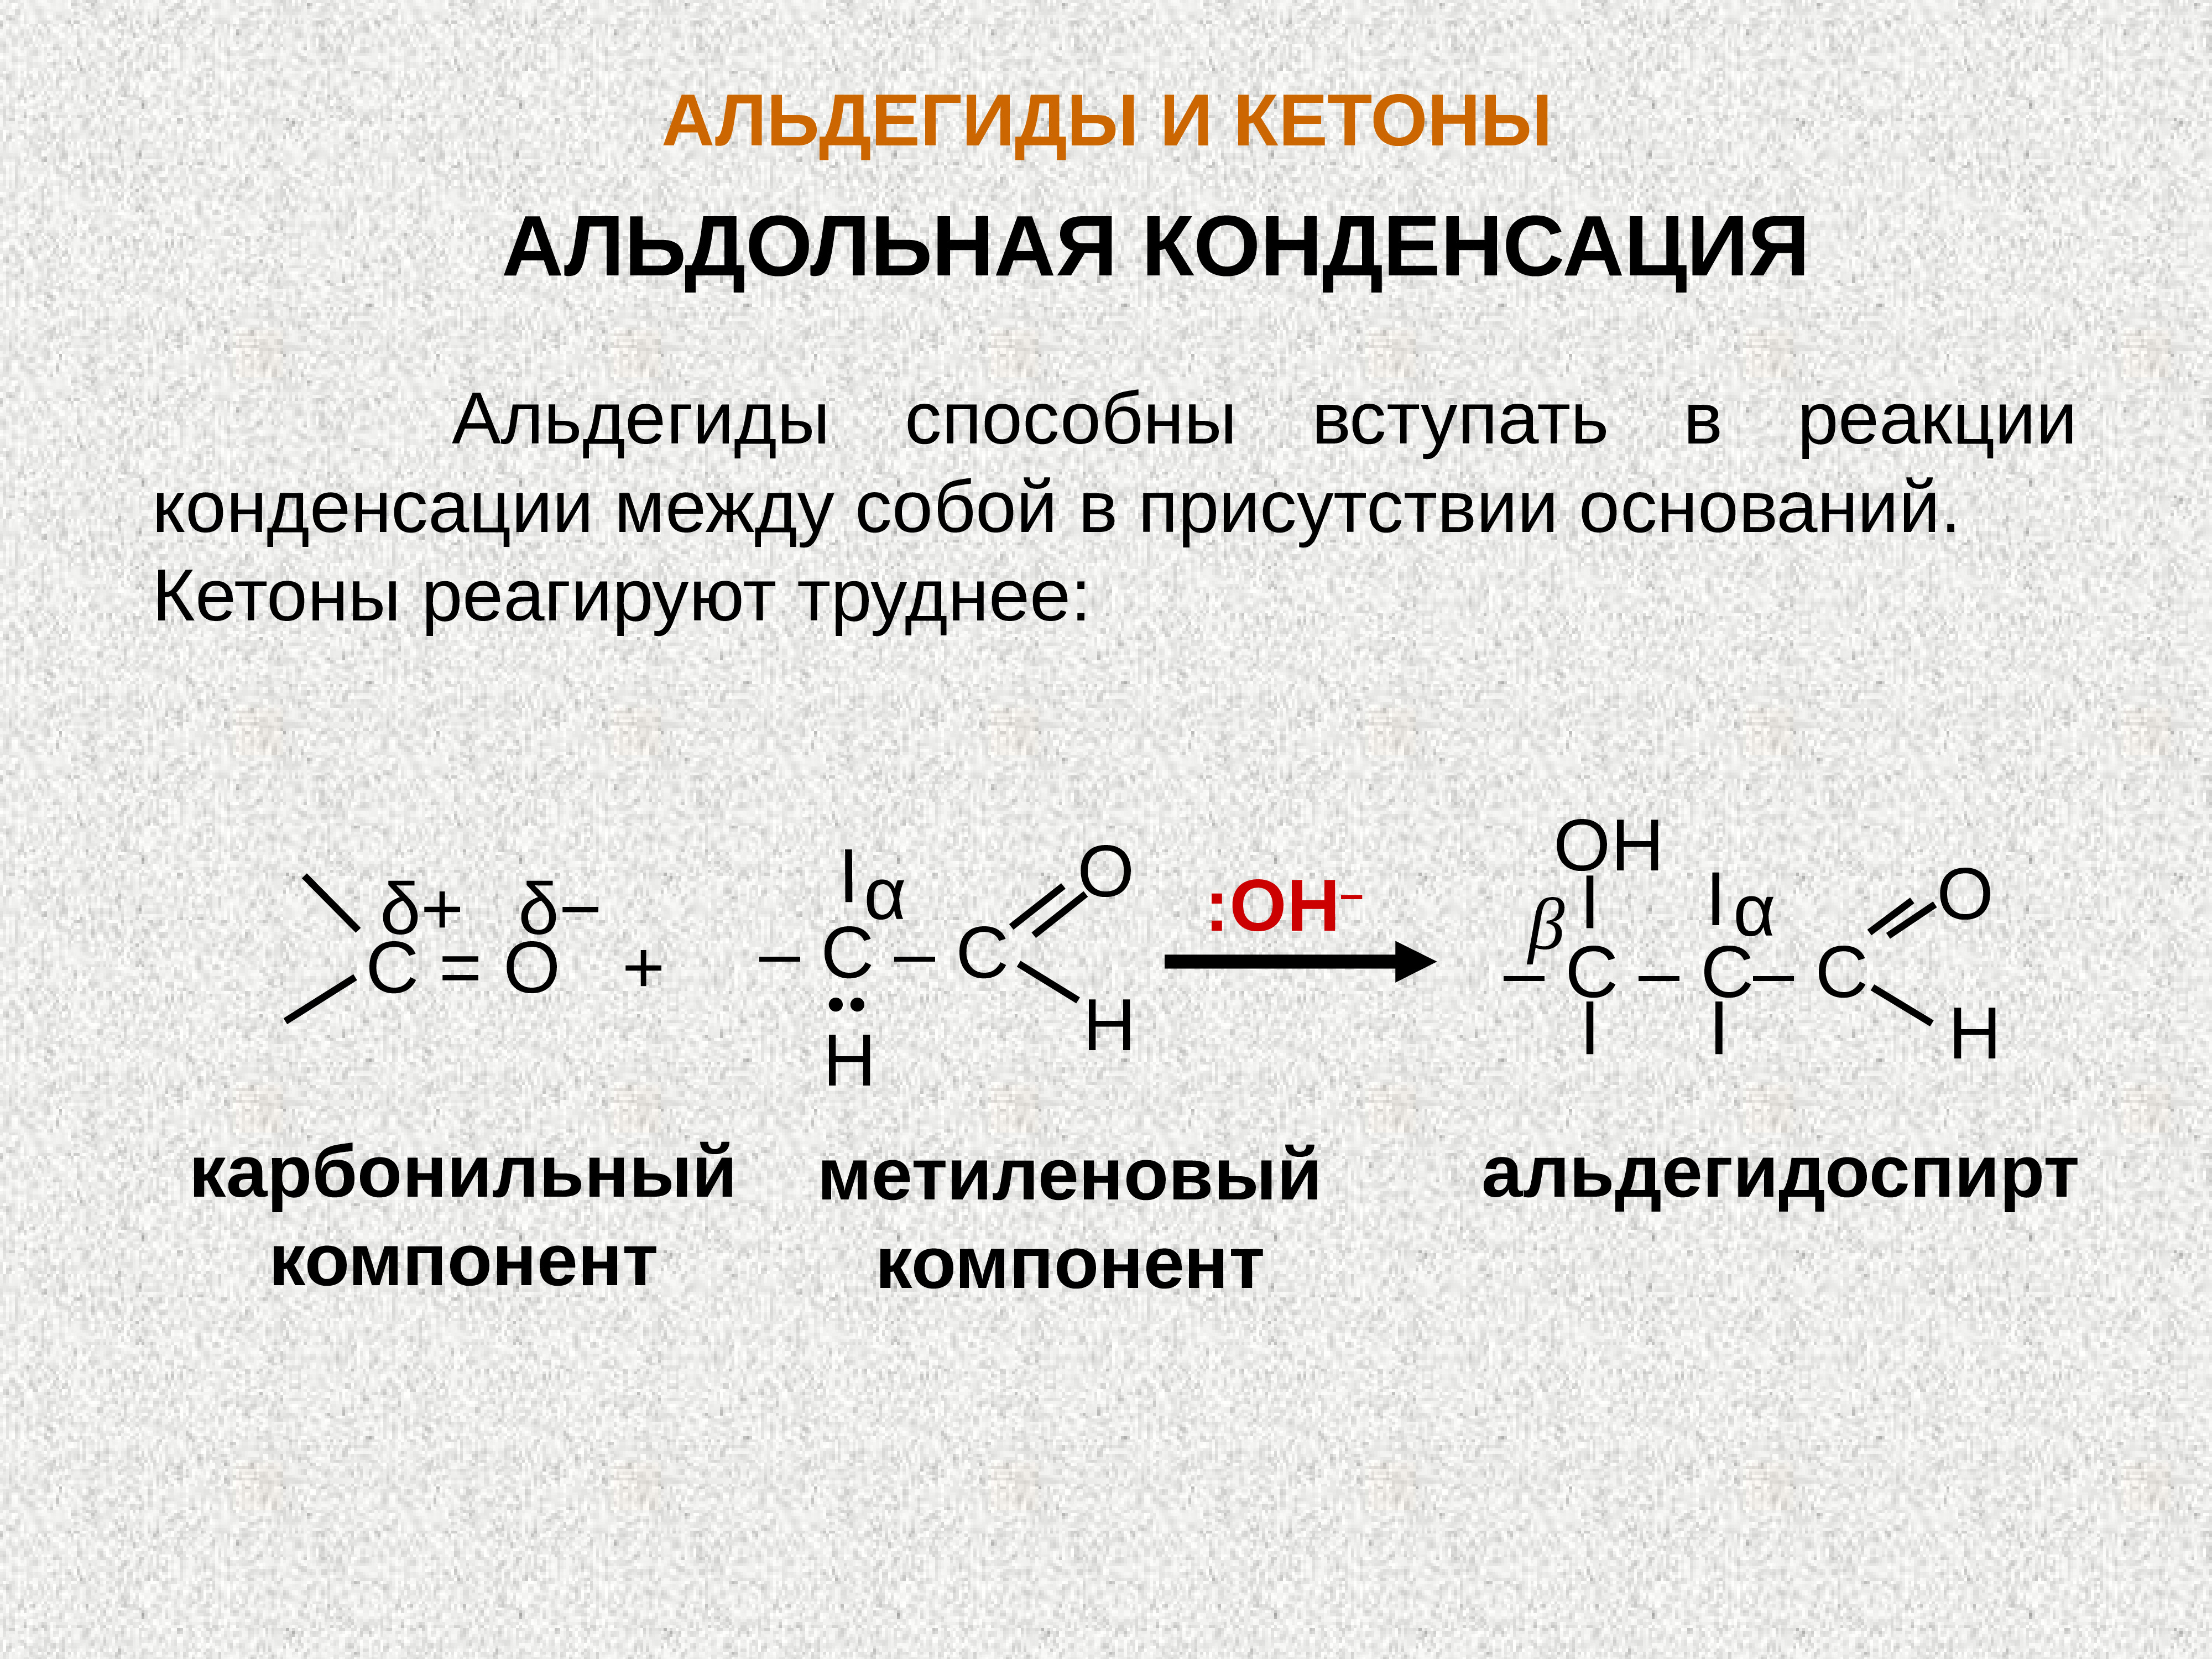 Альдегидная группа соединения. Реакция альдольной конденсации альдегидов. Альдольная конденсация альдегида и кетона. Кетон альдегид реакция конденсации. Конденсации формальдегида с диэтилкетоном.